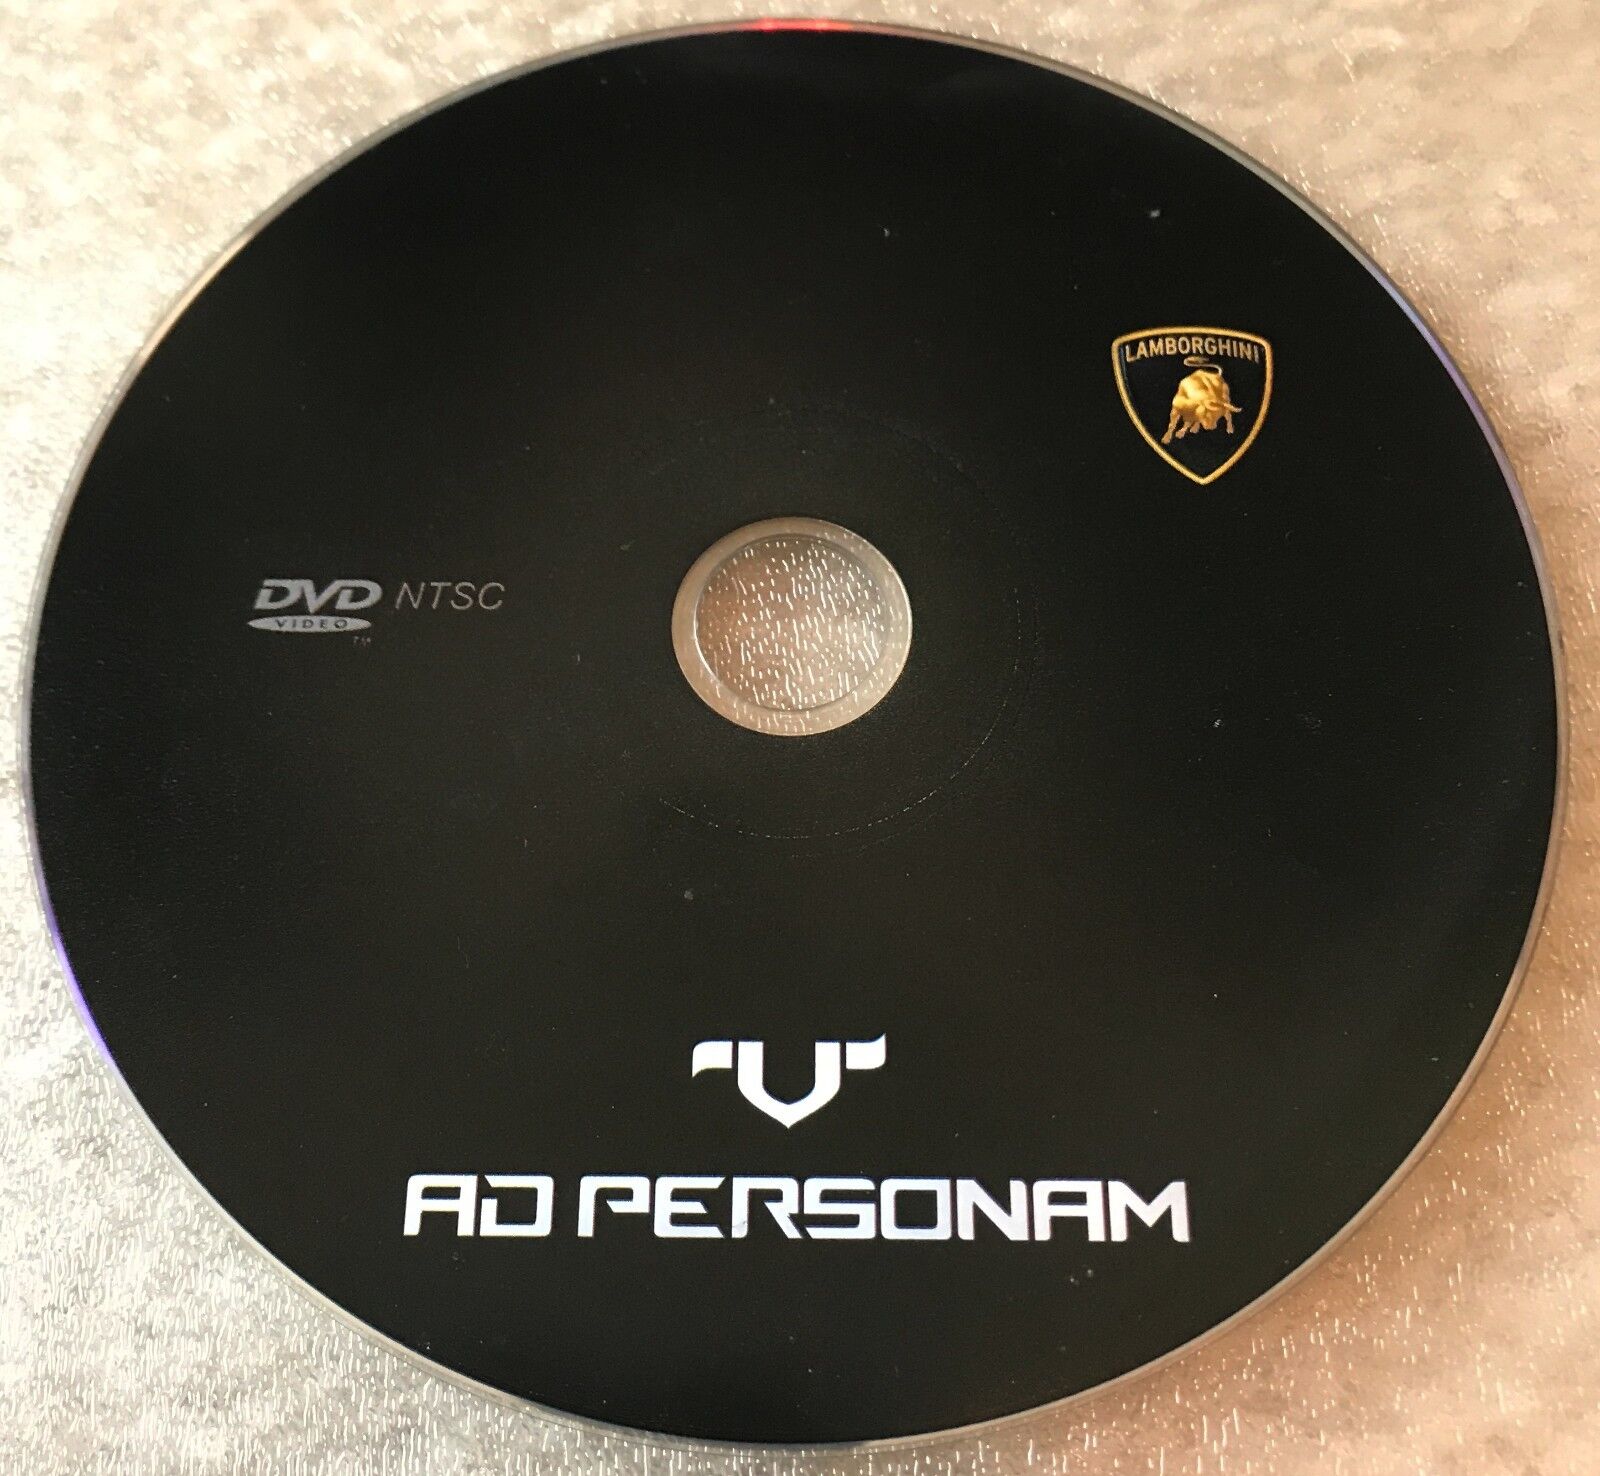 Pre-Owned Lamborghini V Ad Personam Demo DVD NTSC  Free Domestic Shipping